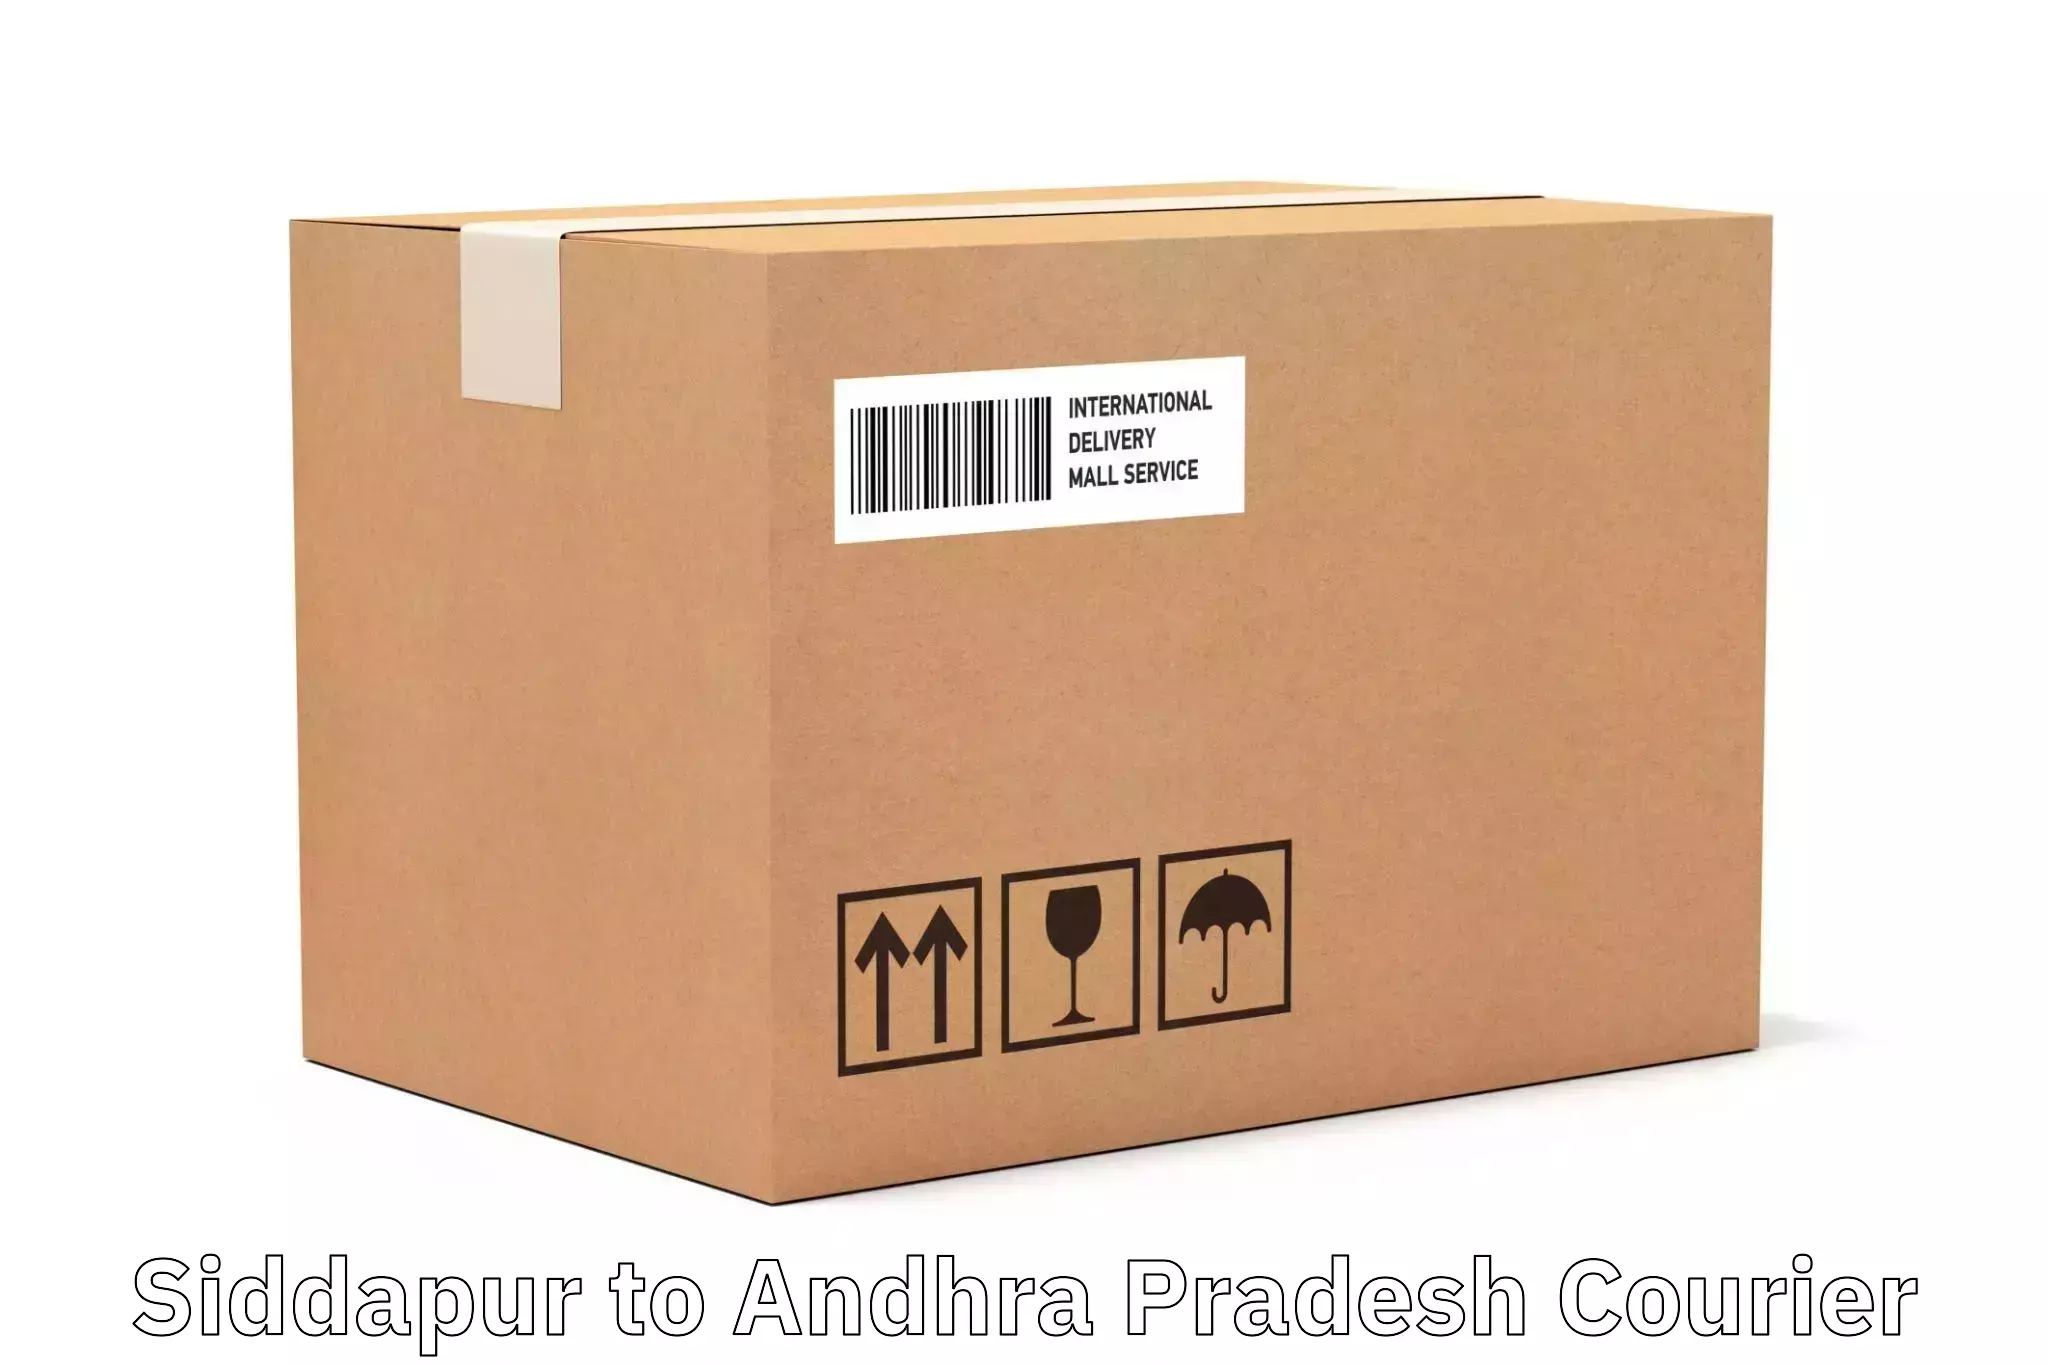 Smart logistics strategies Siddapur to Devarapalli